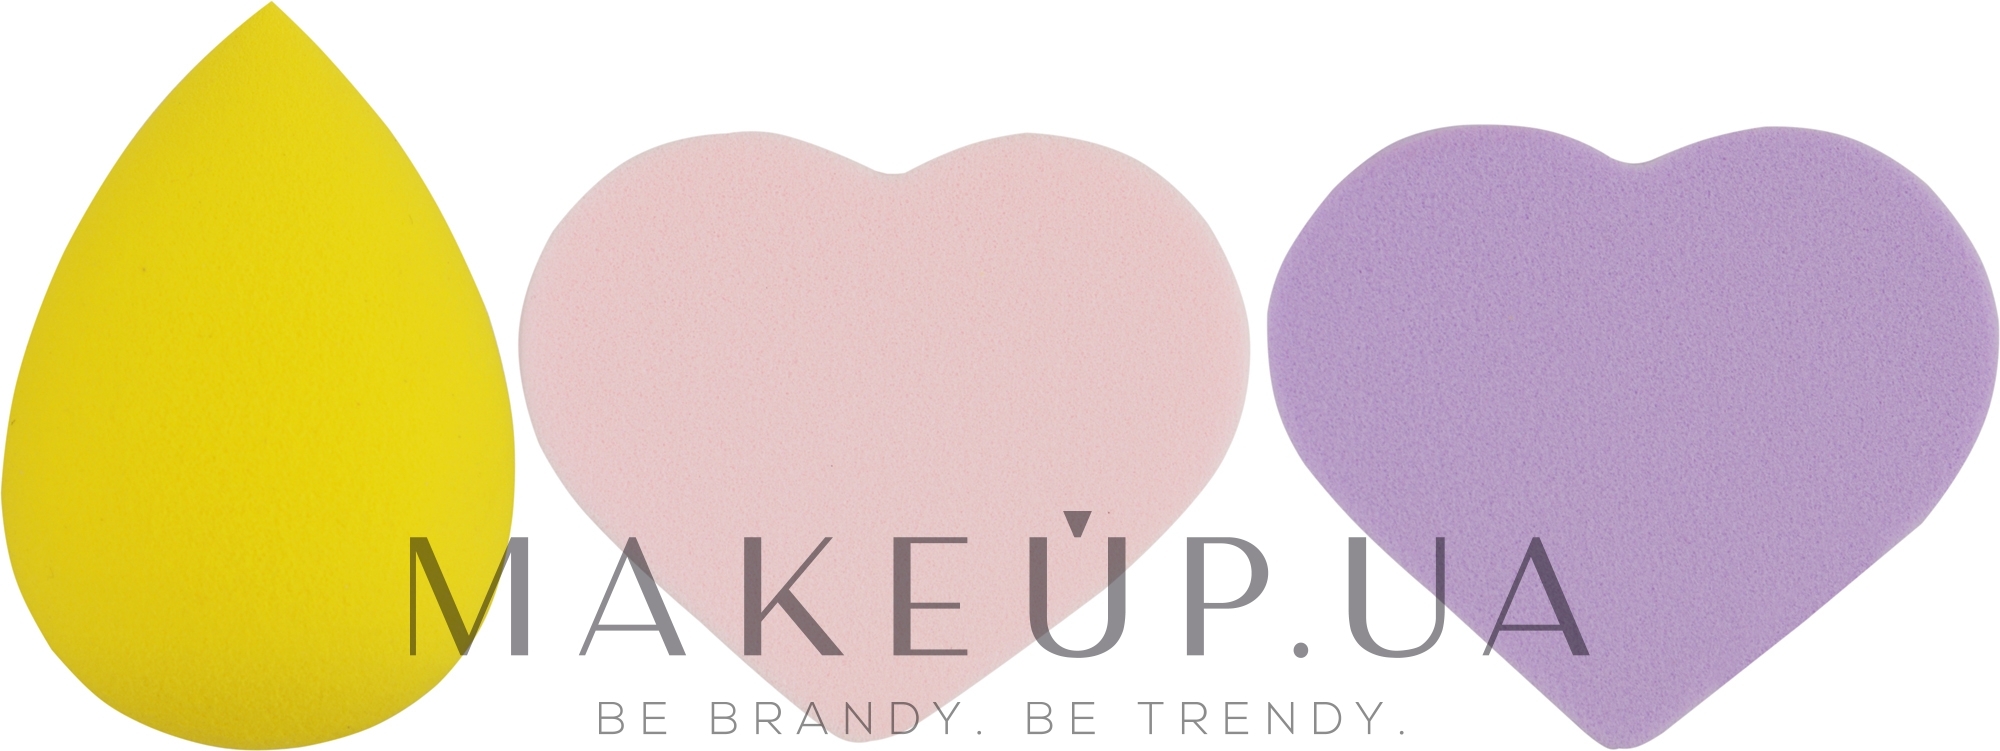 Набор спонжей для макияжа Beauty Blender, капля + 2 сердце, MIX (фиолетовый + розовый + желтый) - Puffic Fashion PF-229 — фото 3шт